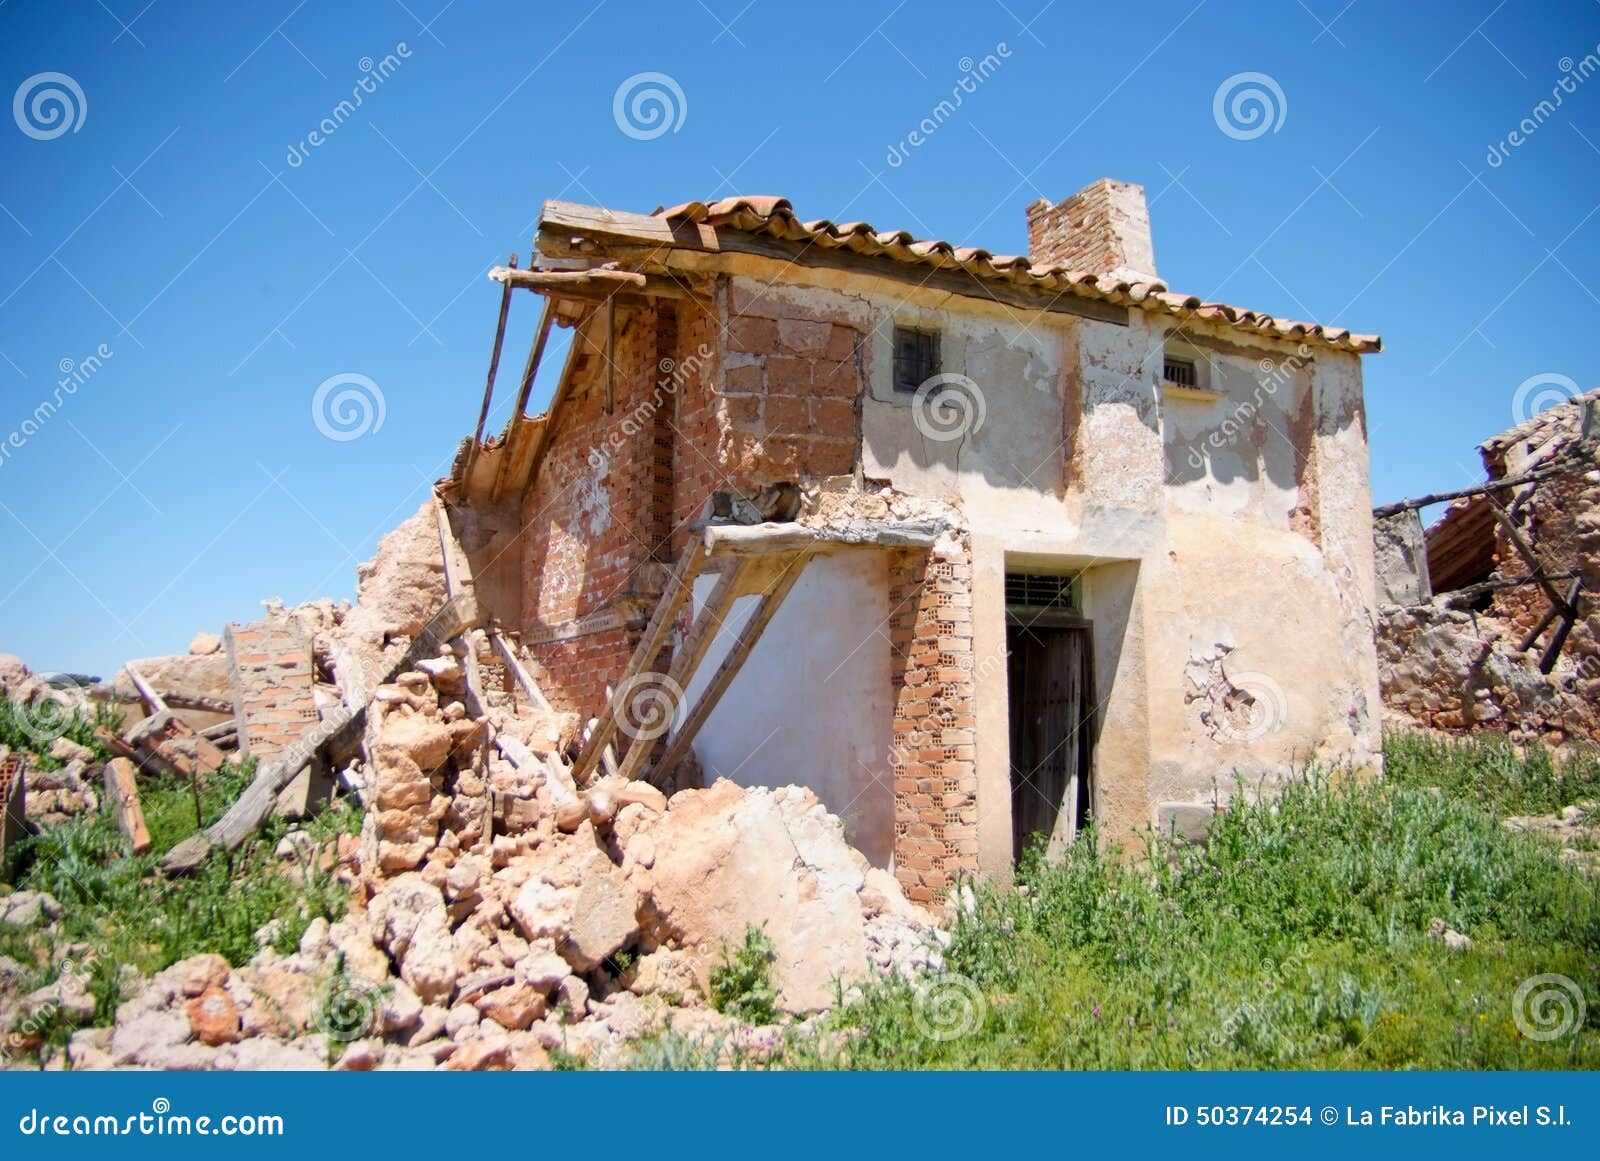 Destrucción por terrorismo en Soportujar,un pequeño pueblo de Granada